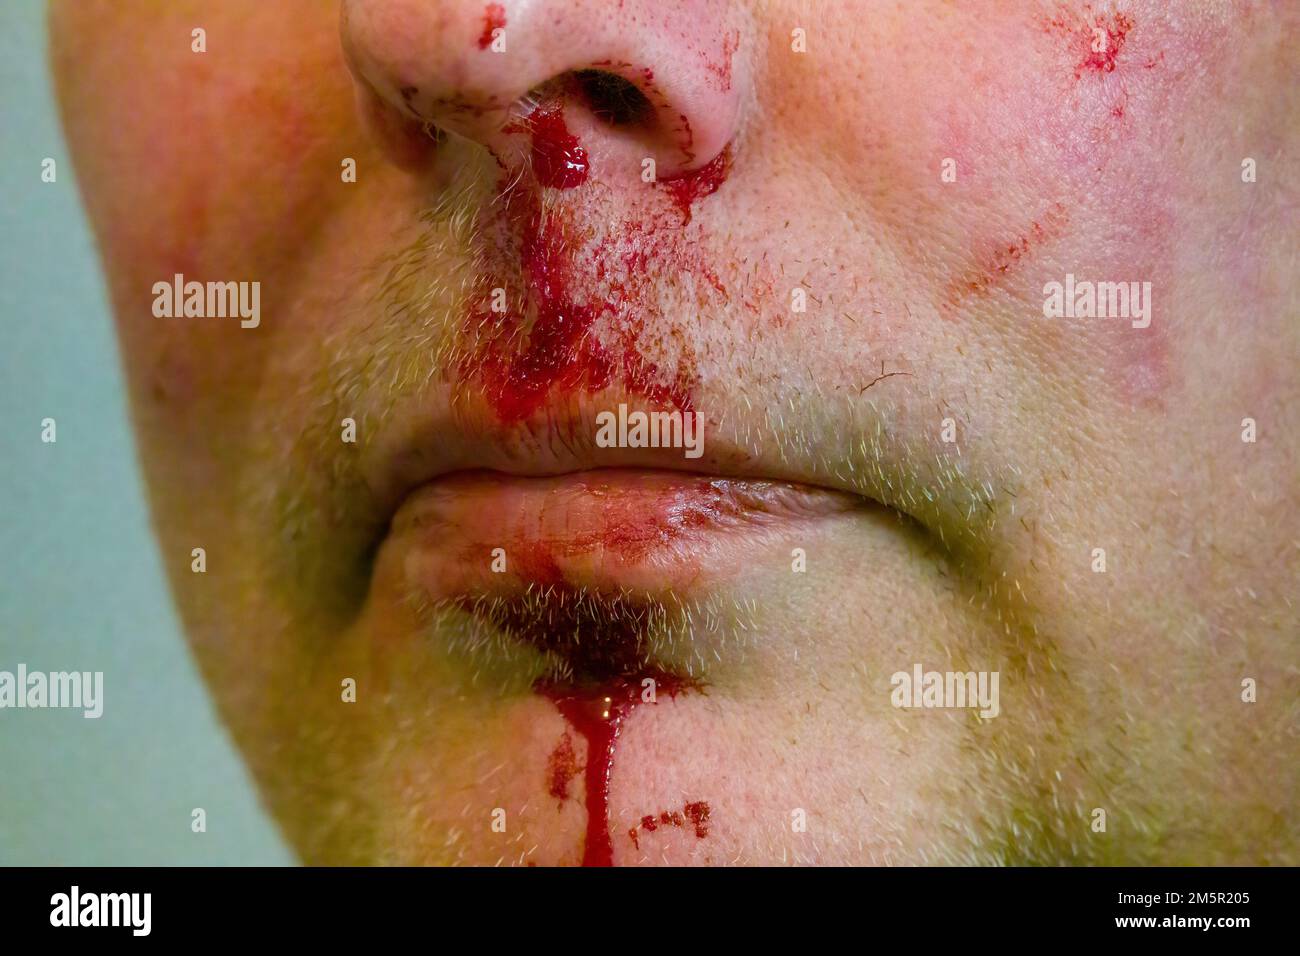 Fond perdu. Homme caucasien avec un nez qui saigne. Portrait d'un homme avec un nez cassé. Concept de santé ou de violence Banque D'Images